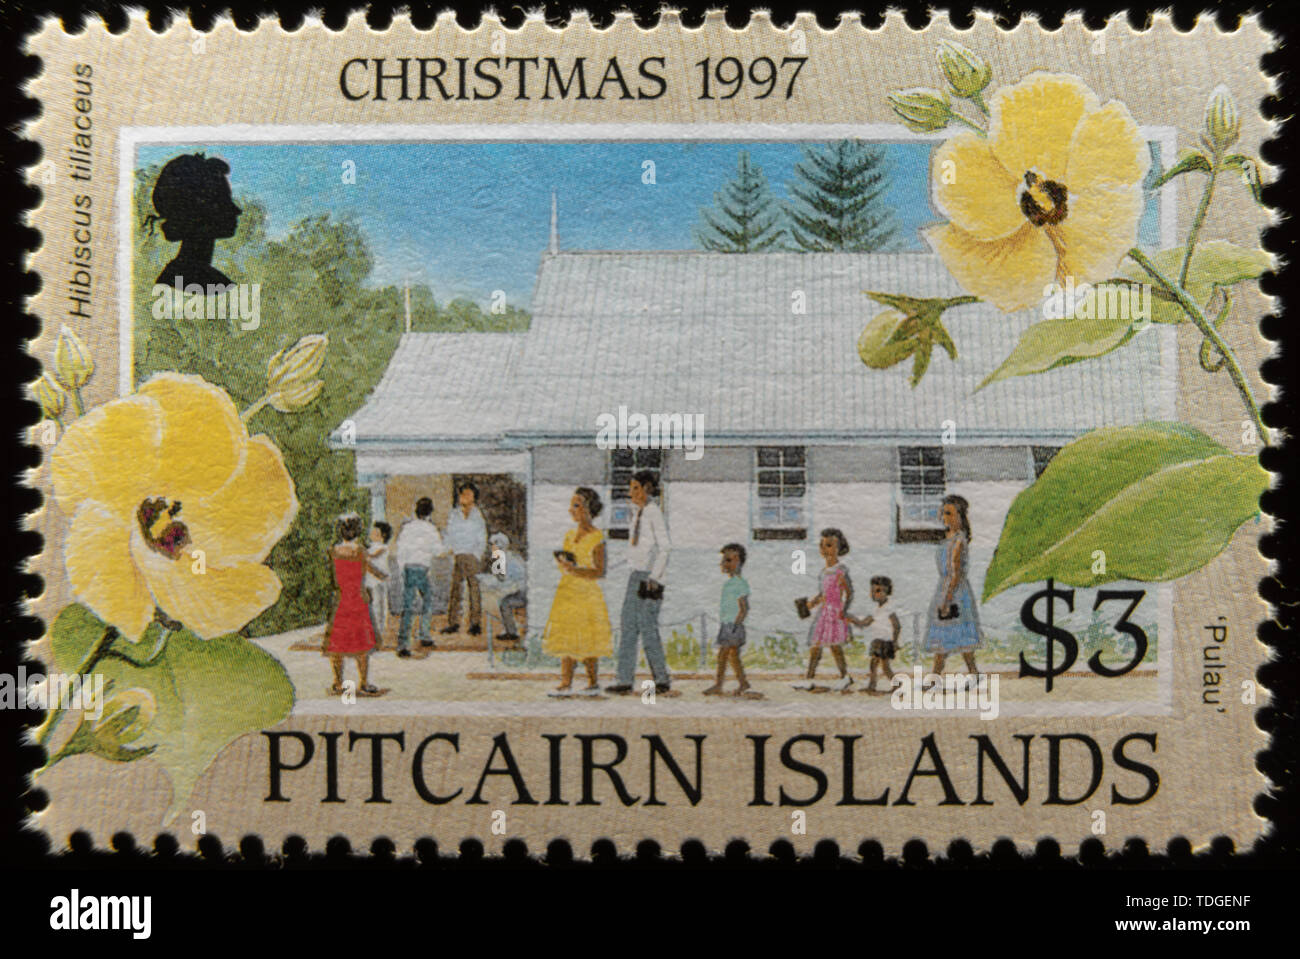 Una imagen macro de Islas Pitcairn conmemorativo de la Navidad de 1997, $3 sello de correos. Foto de stock